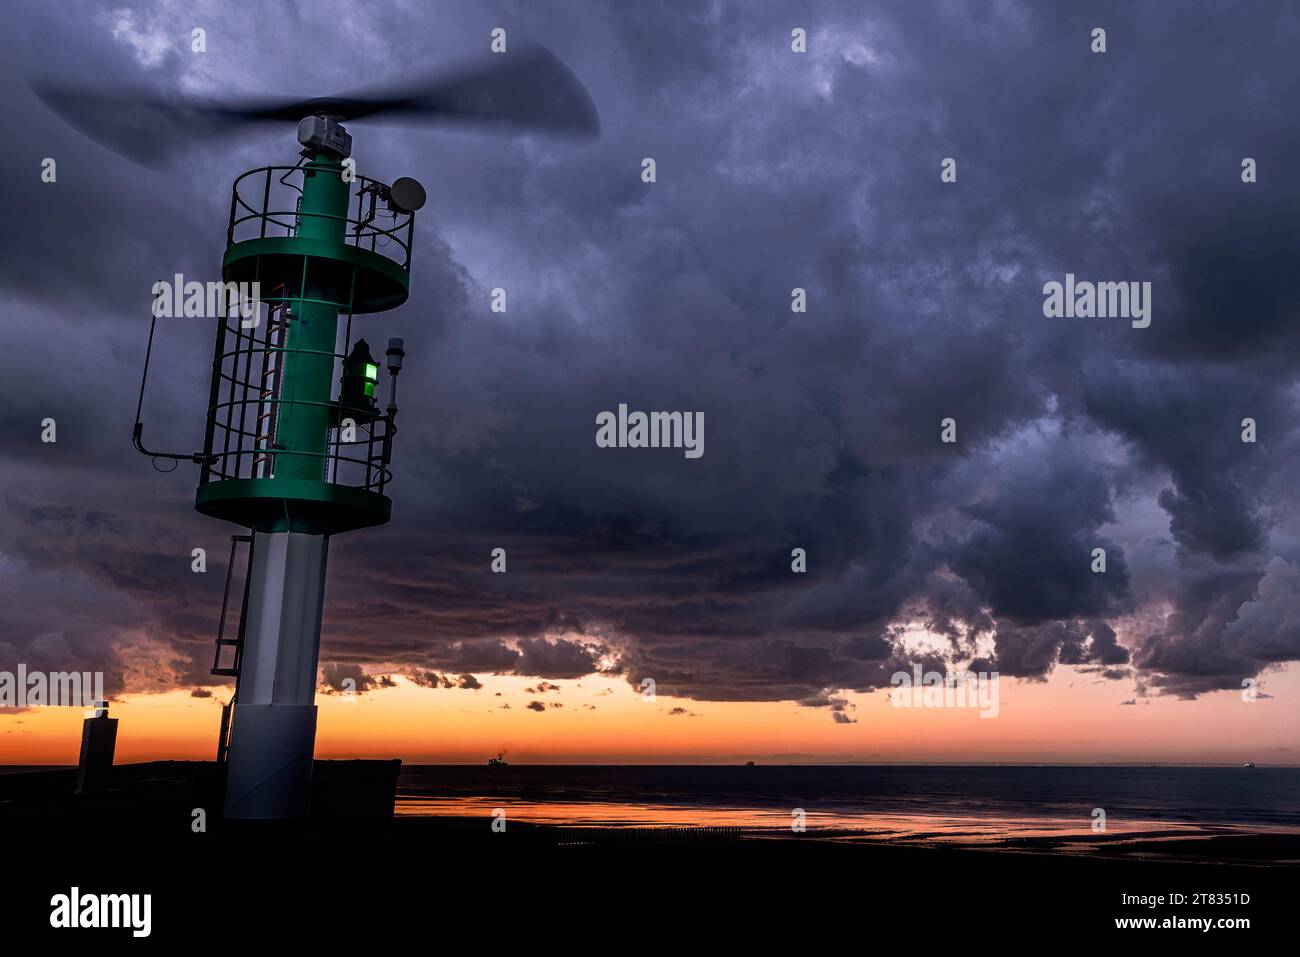 Le Sémaphore situé sur une tour radar dans les dunes de Sangatte, ce feu balise le chenal d'accès au port de Calais. Stock Photo